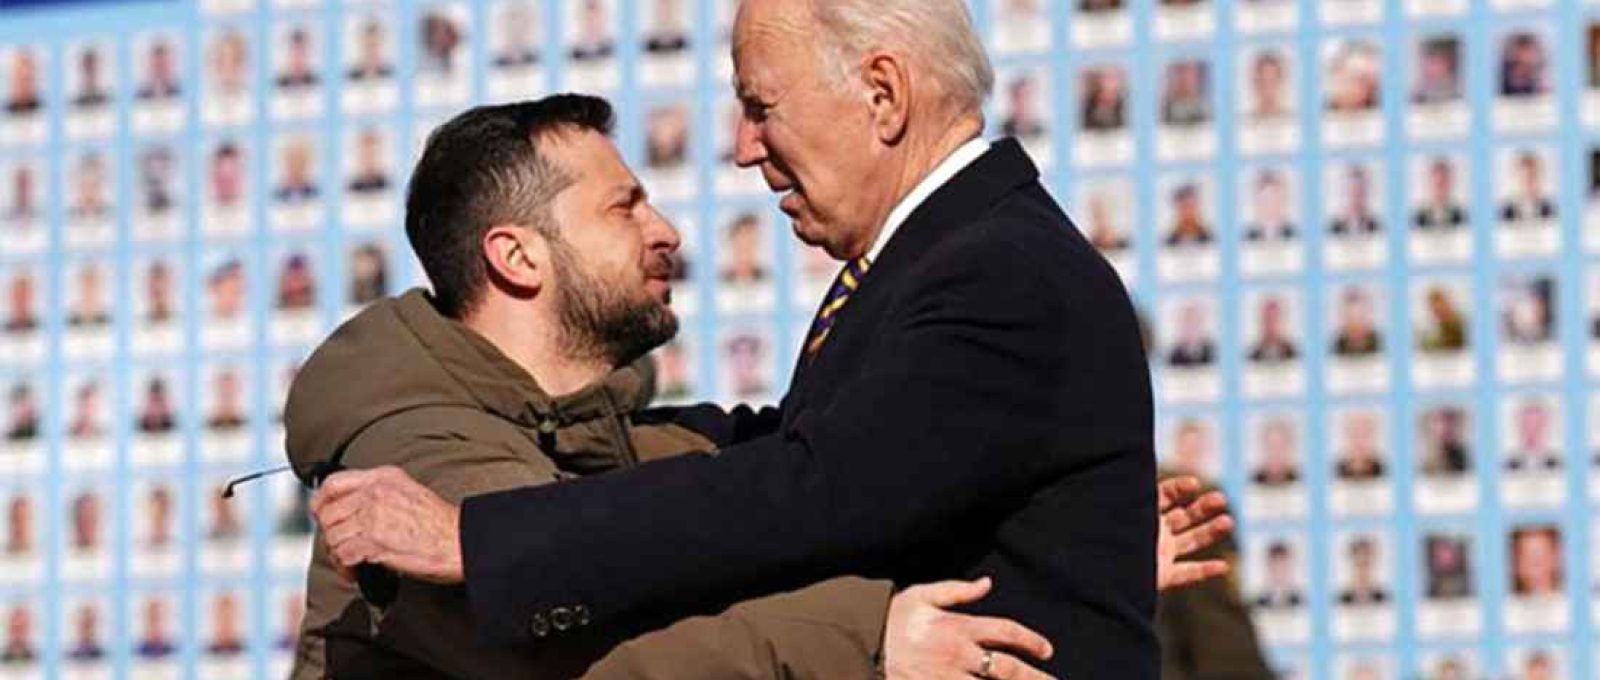 O presidente Biden é saudado pelo presidente ucraniano Volodymyr Zelensky, que defendeu a continuidade da ajuda ocidental (Dimitar Dilkoff/Agence France-Presse/Getty Images).